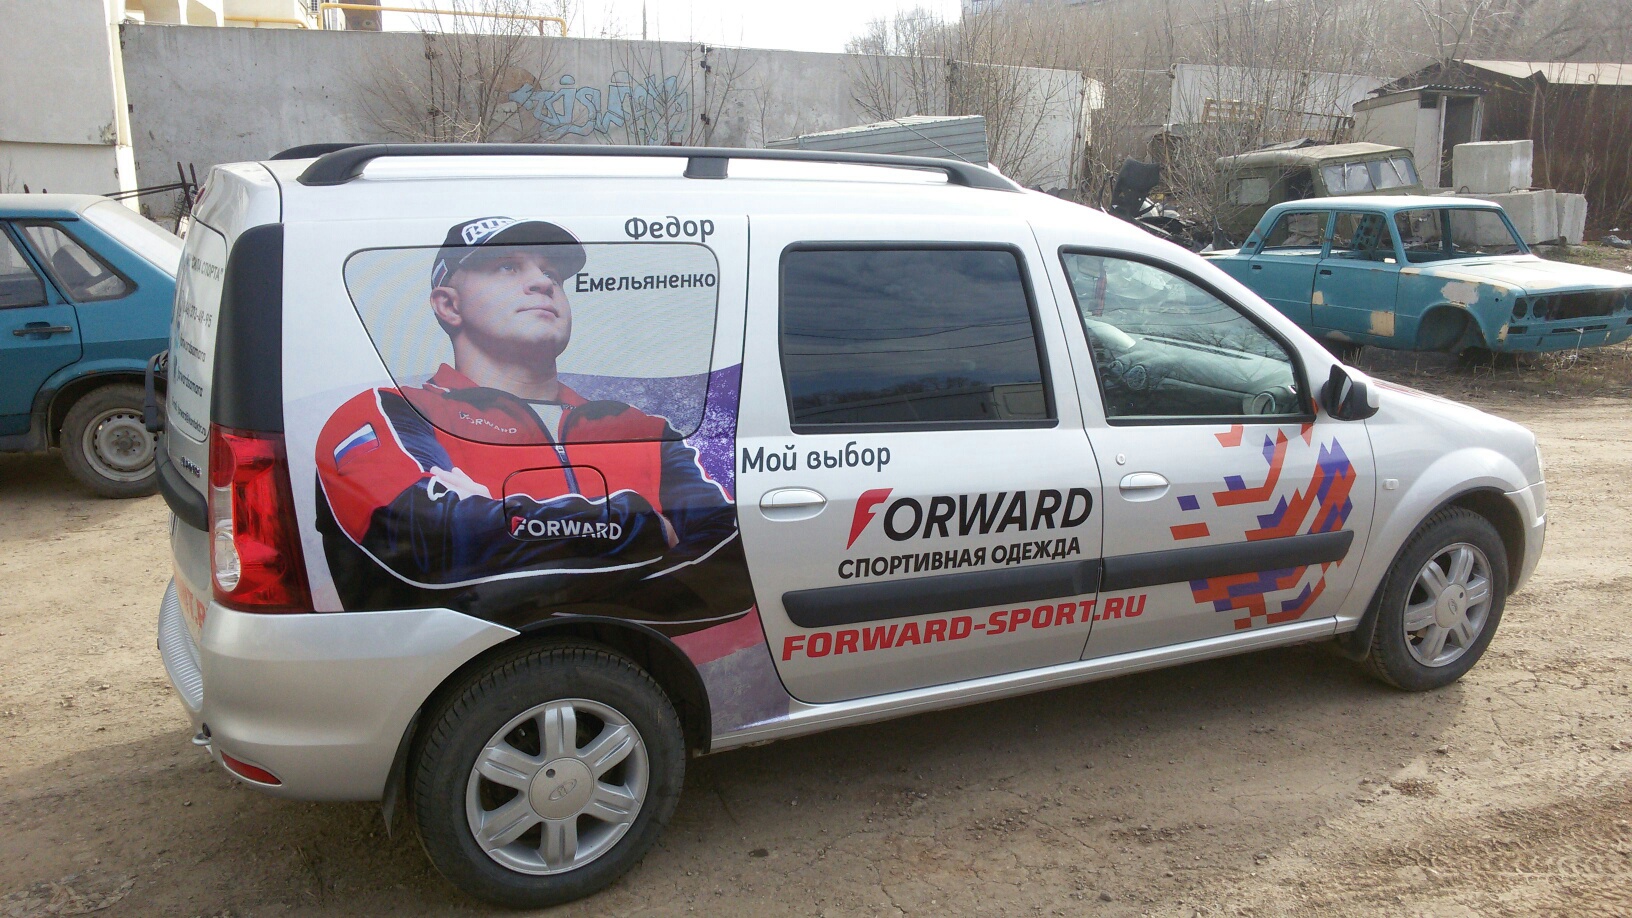 Реклама на авто в Самаре автомобиля Ларгус компании Форвард-Спорт